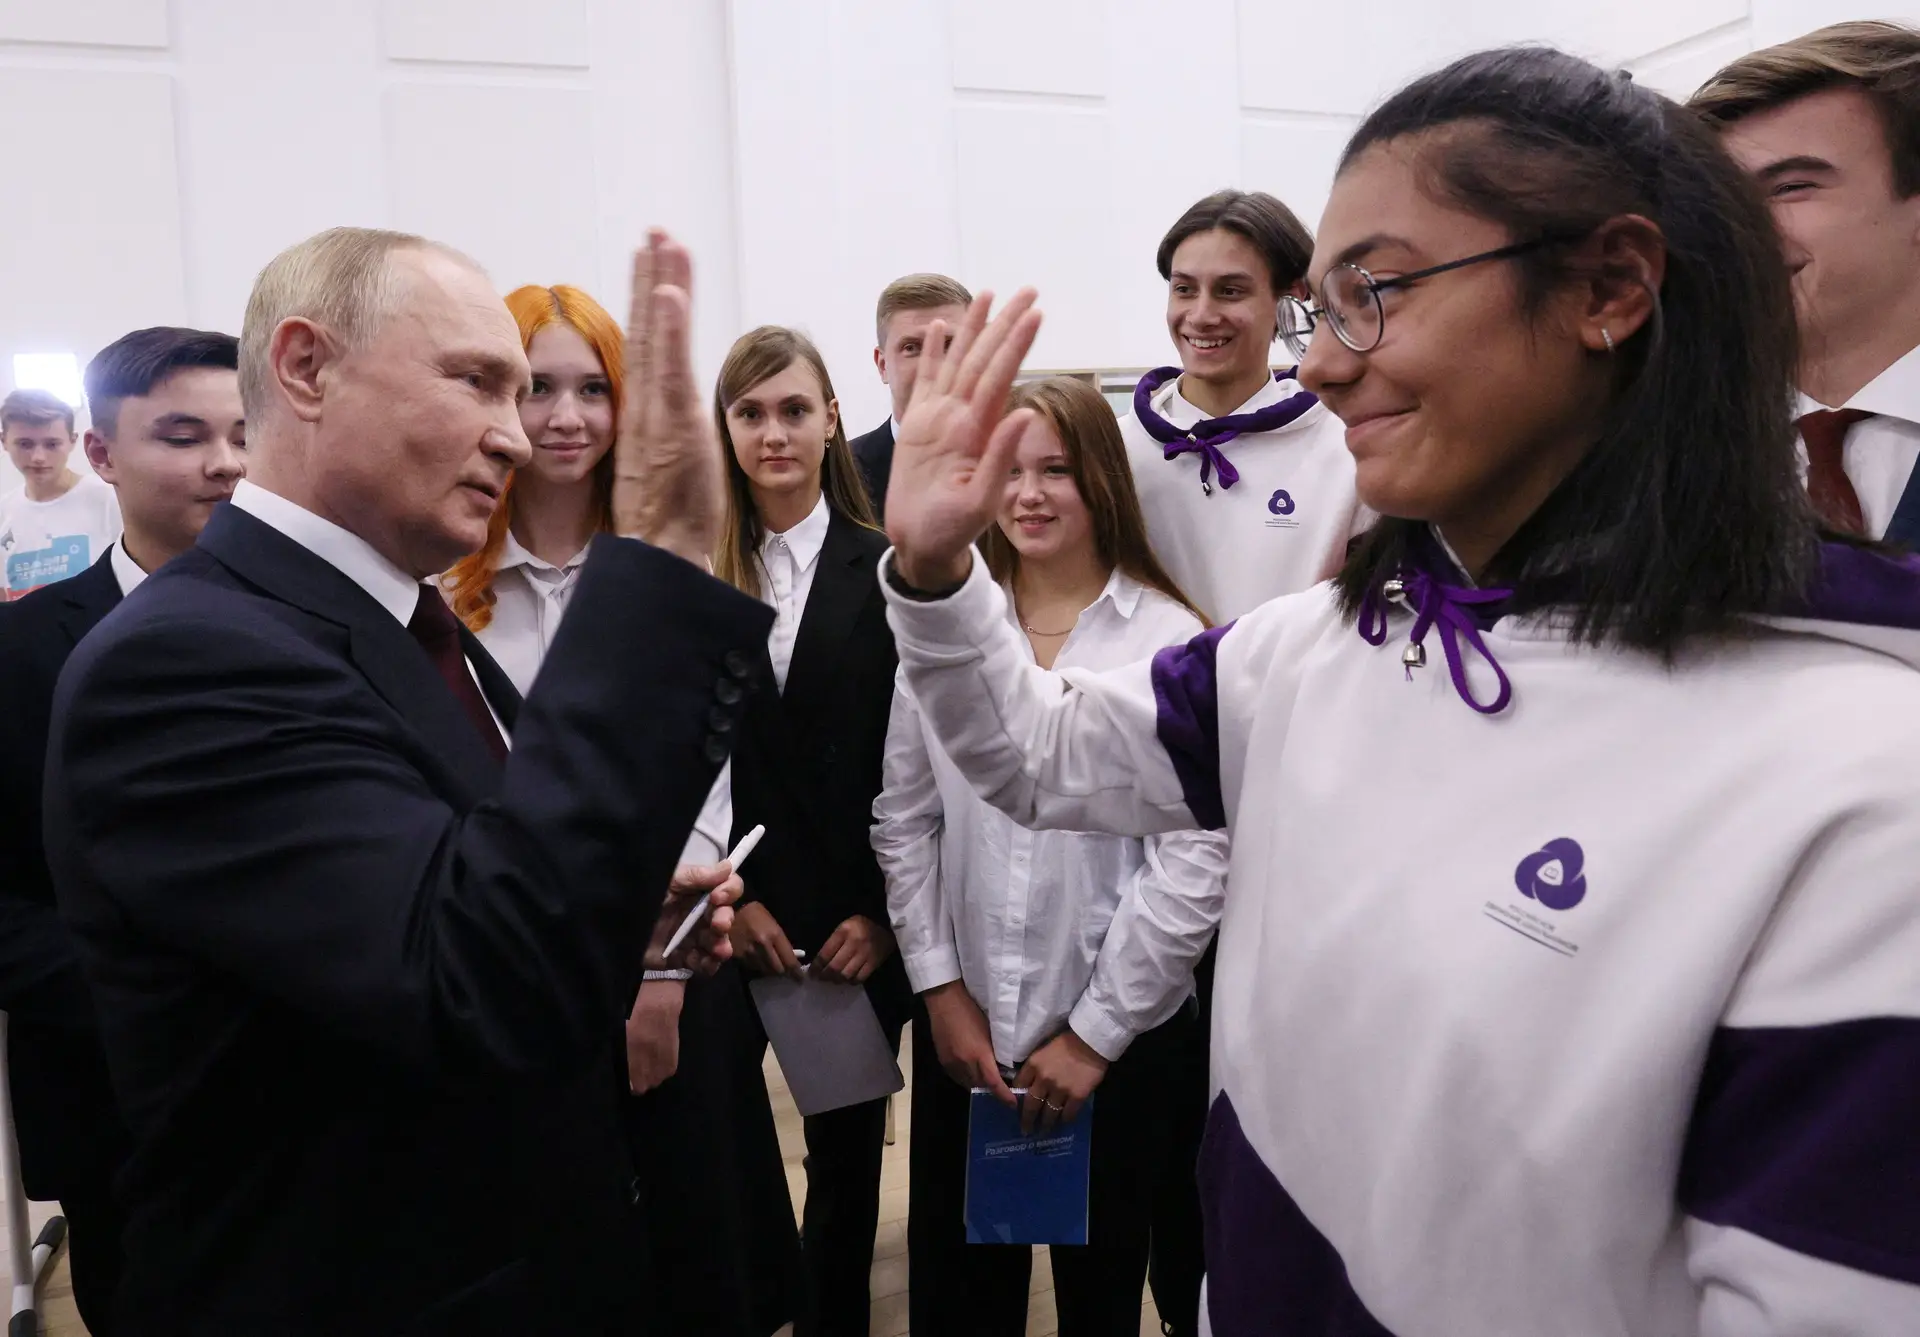 Regresso às aulas na Rússia é assinalado com uma lição designada "Conversas sobre o que é importante"